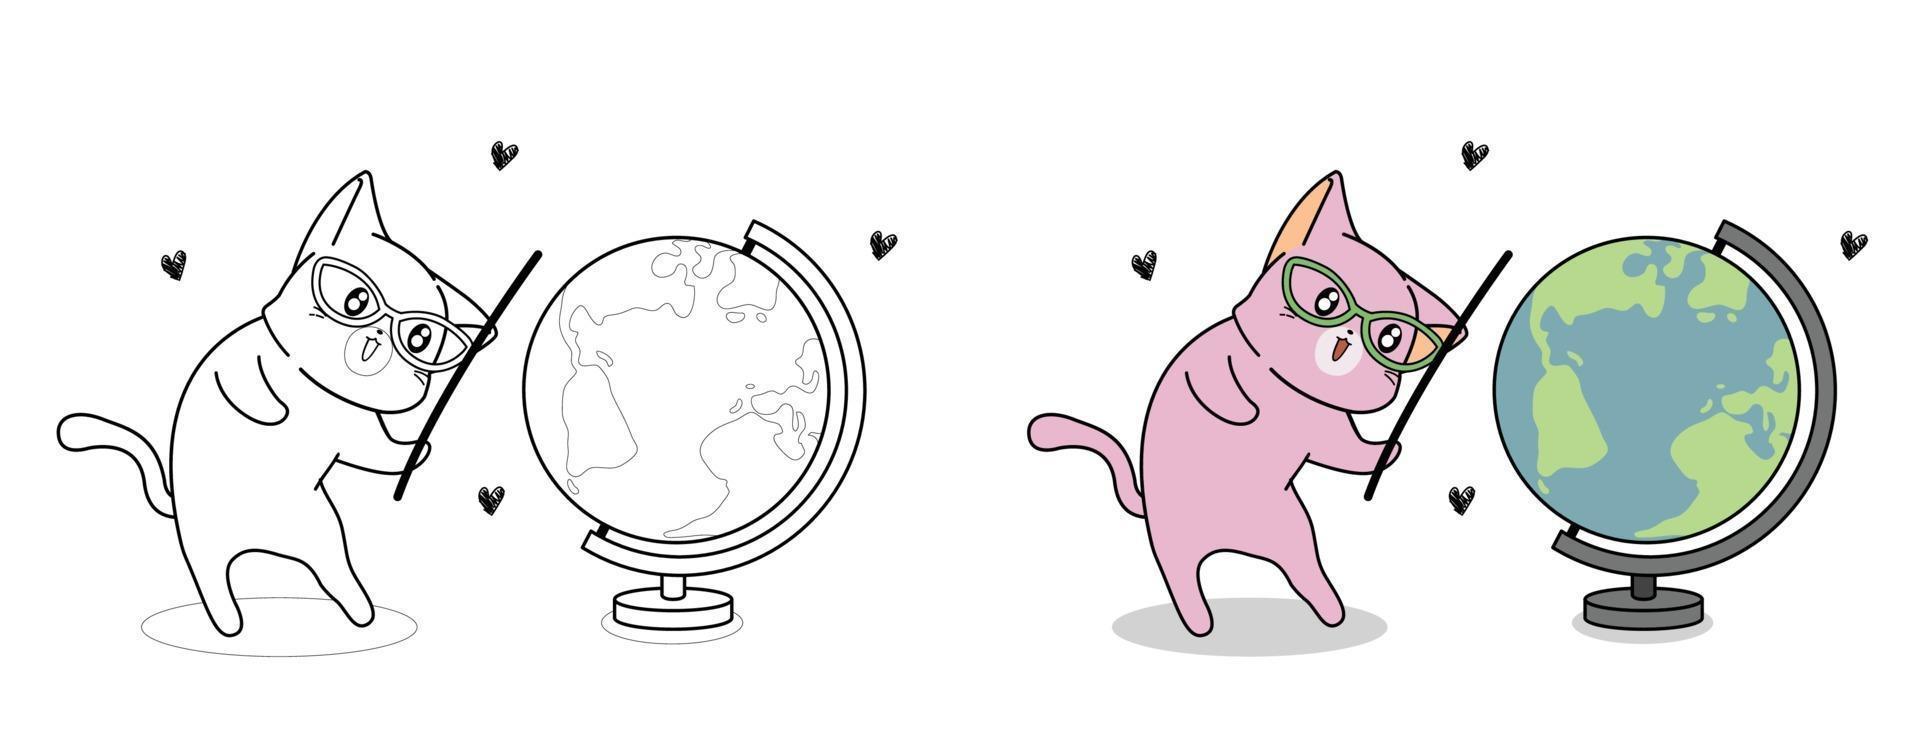 Coloriage de dessin animé mignon chat et carte du monde pour les enfants vecteur